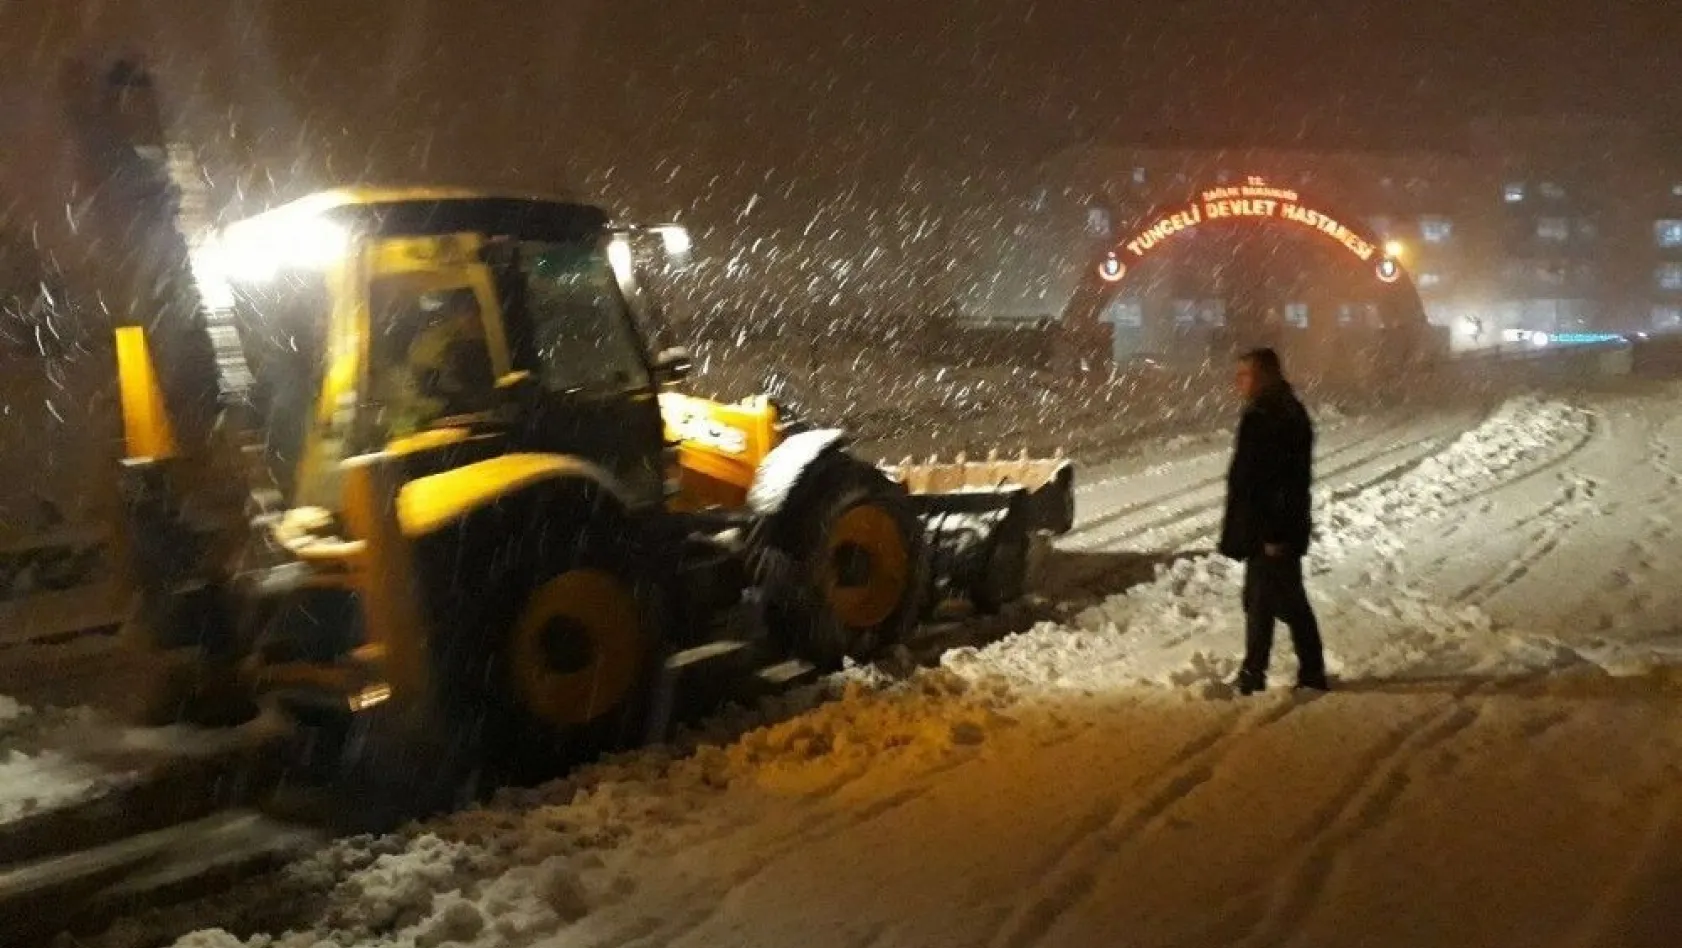 Tunceli Belediyesi, aralıksız karla mücadele çalışması yapıyor
